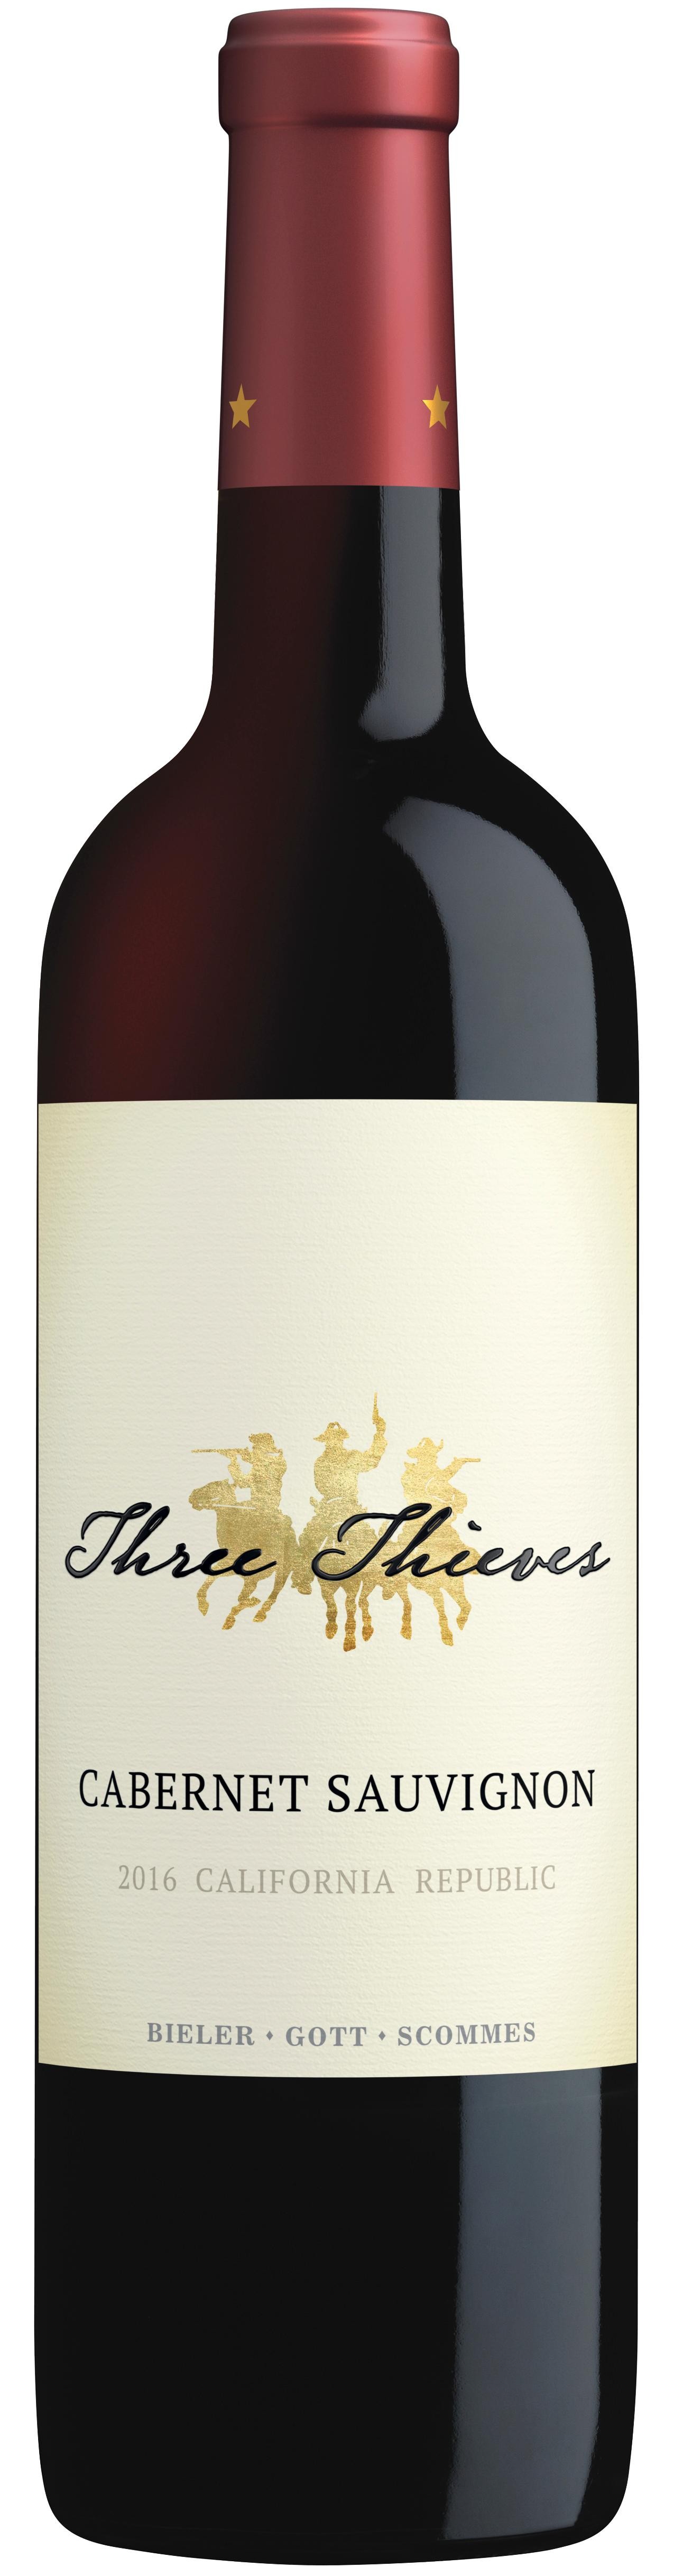 Three Bandit Cabernet Sauvignon Red Wine, 1L Wine Box - from California - 750ml Bottle